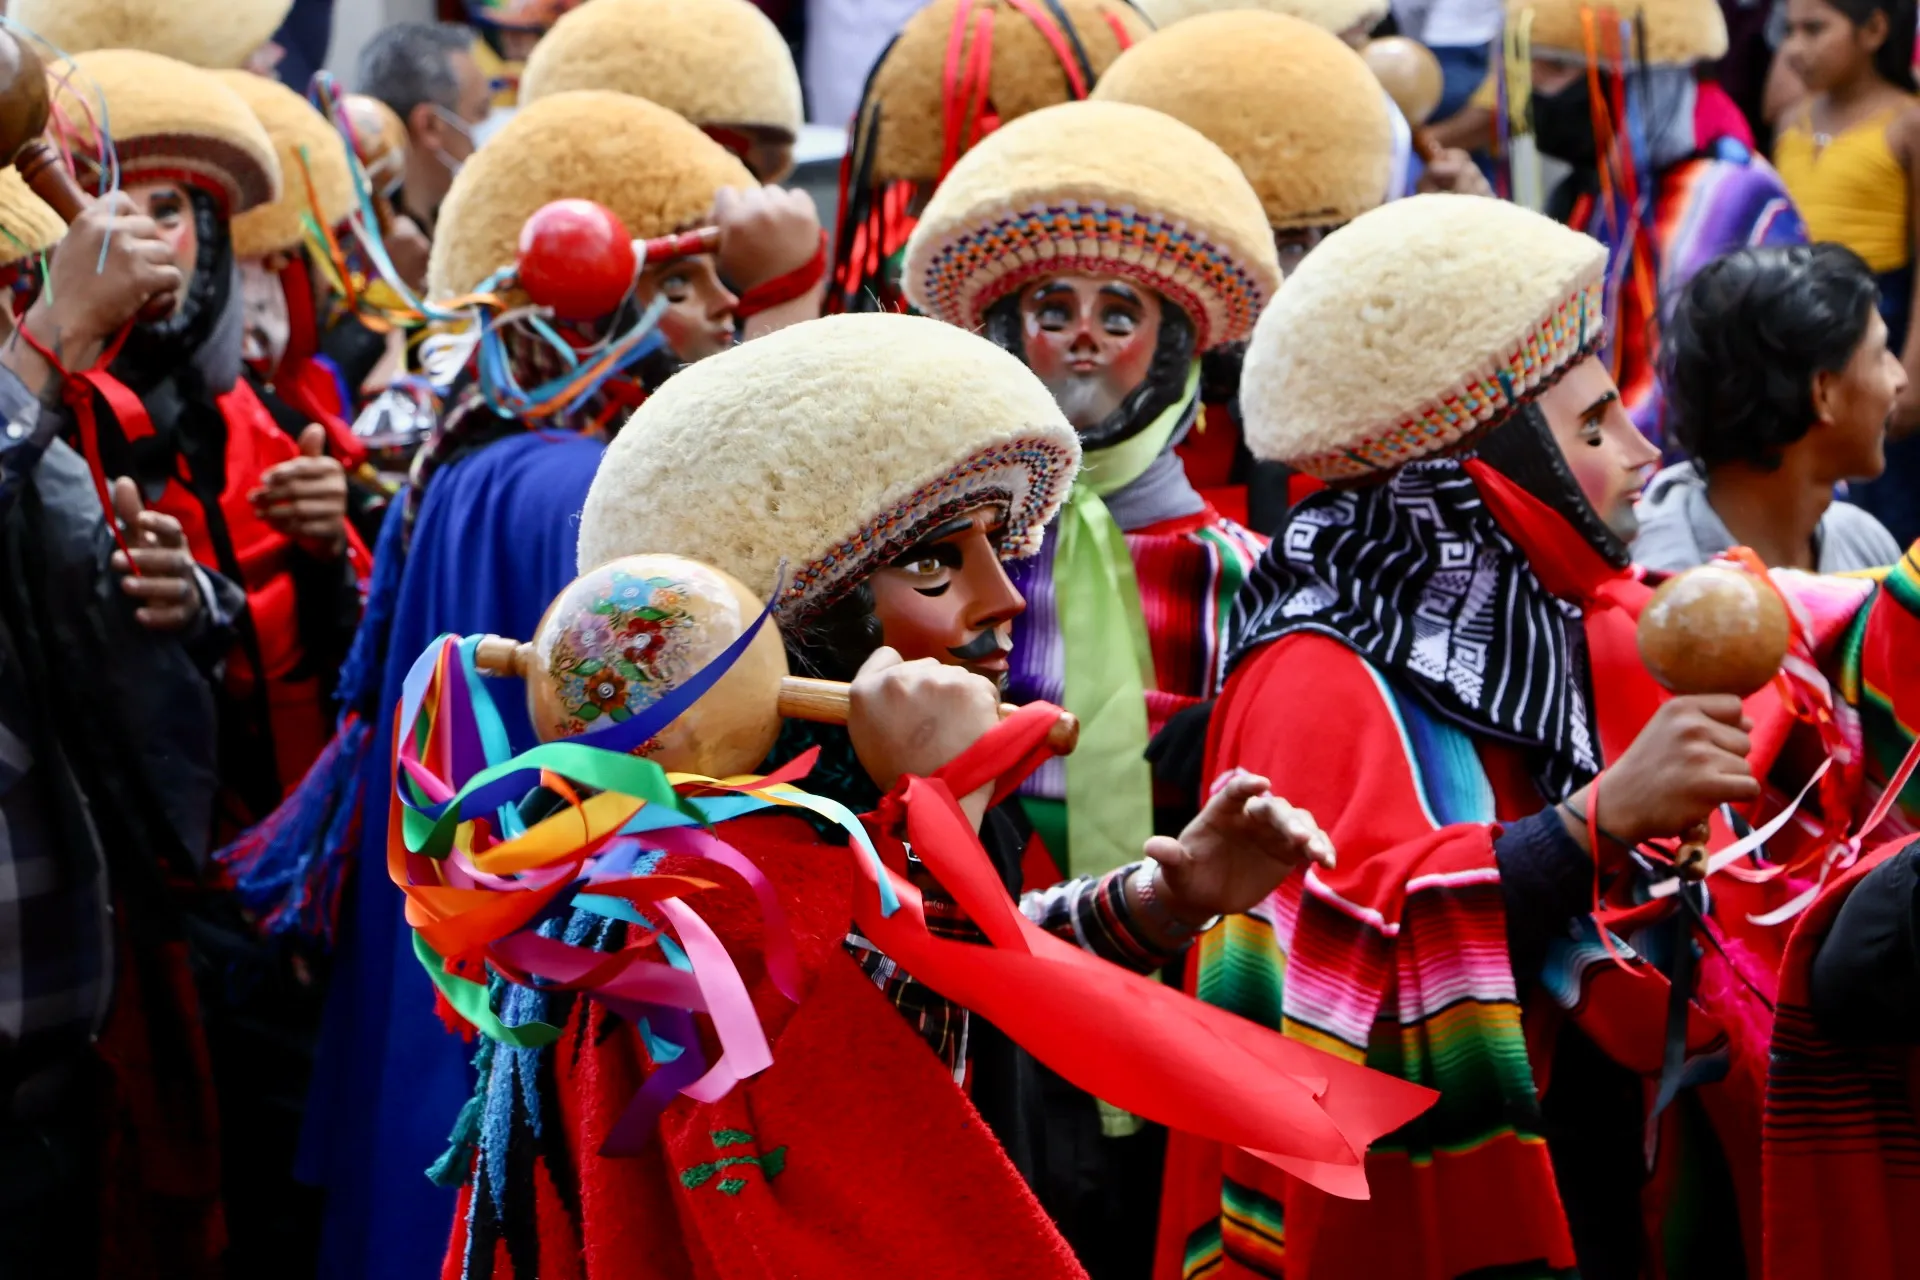 Los parachicos, danza y tradición en Chiapa de Corzo Inscrita en 2010 en la Lista Representativa del Patrimonio Cultural Inmaterial de la Humanidad, los parachicos son los principales actores de la fiesta tradicional de enero de Chiapa de Corzo.  https://larevistadelsureste.com